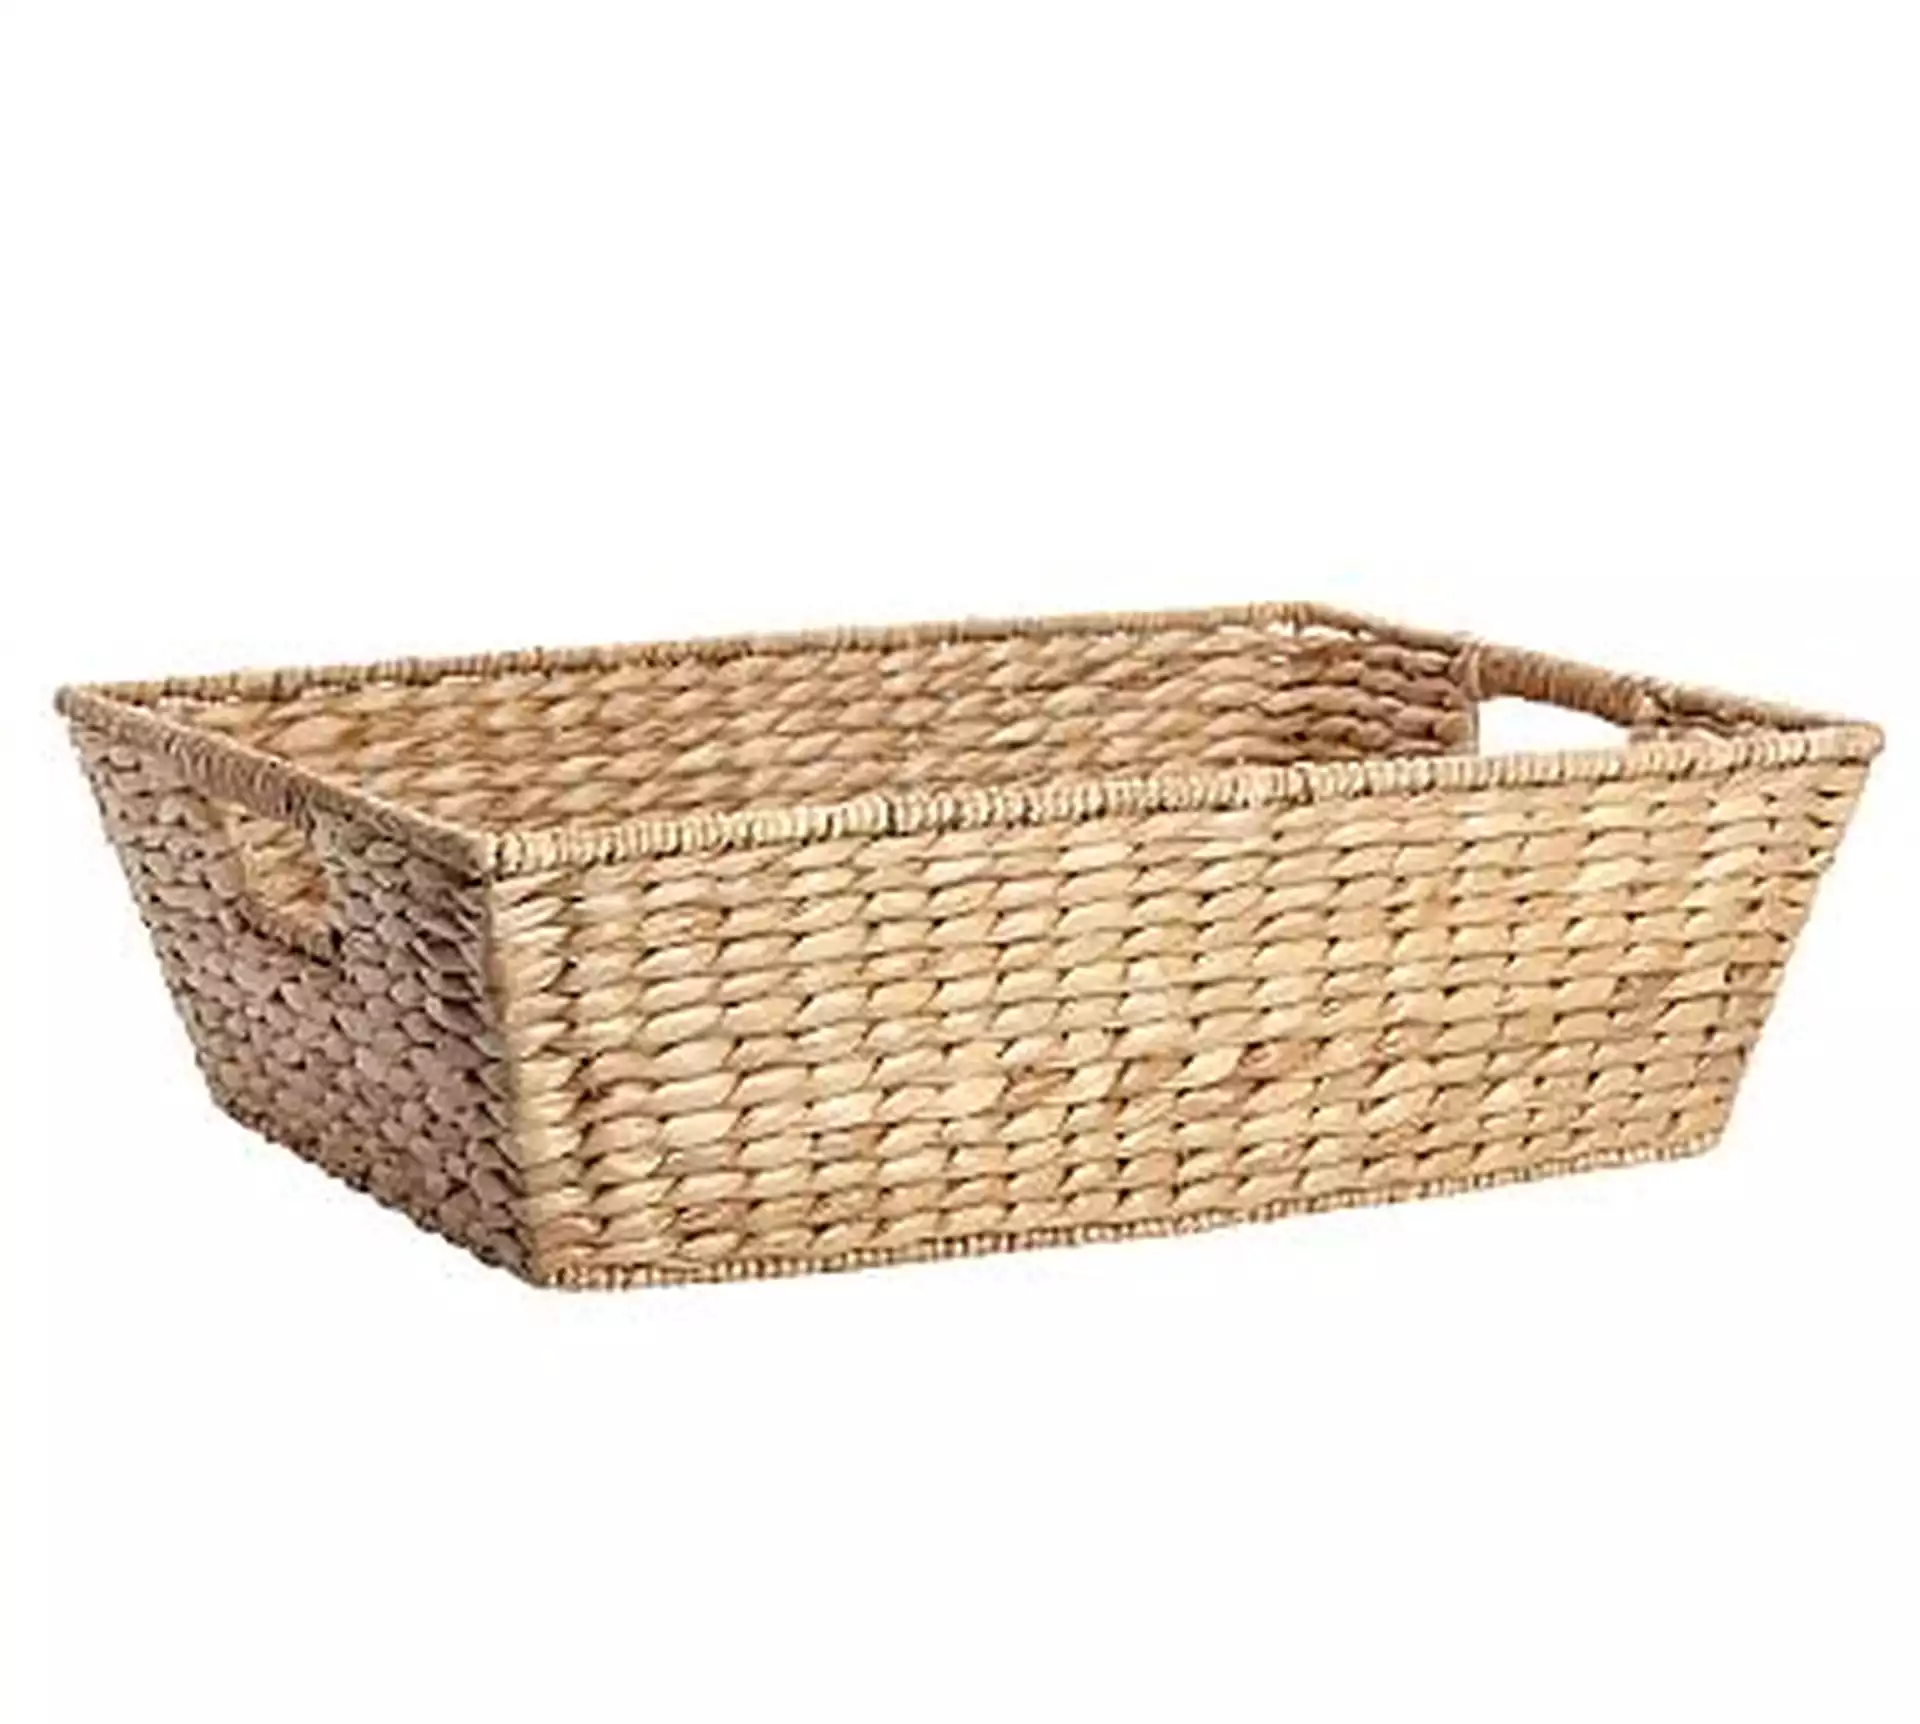 Savannah Underbed Basket, Large, 24" x 17"